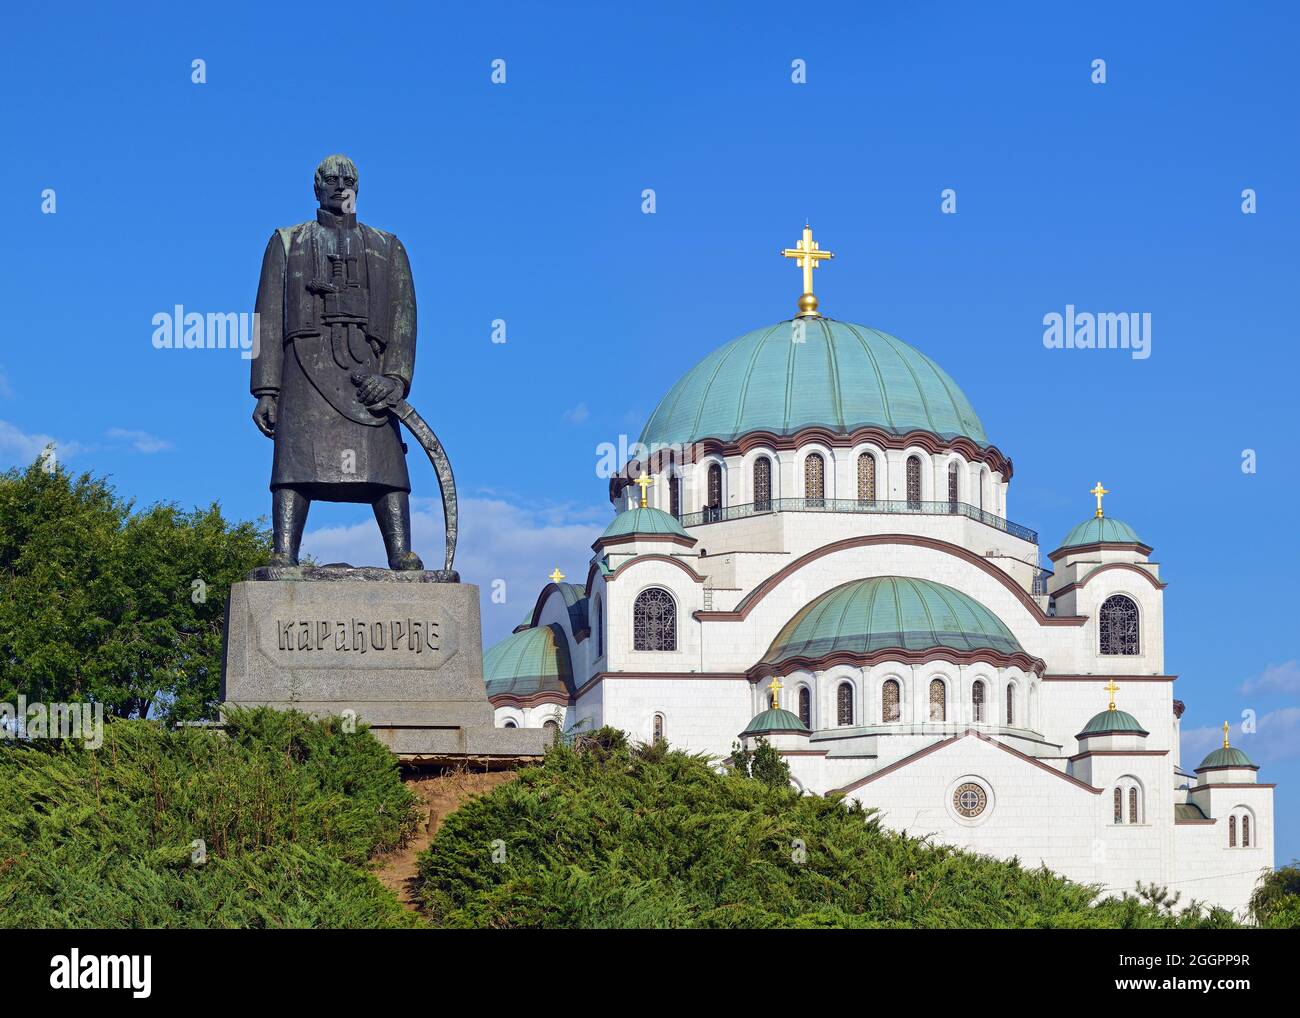 Monument de Karadjordje avec l'église de Saint Sava en arrière-plan, parc de Karadjordjev, Belgrade, Serbie Banque D'Images